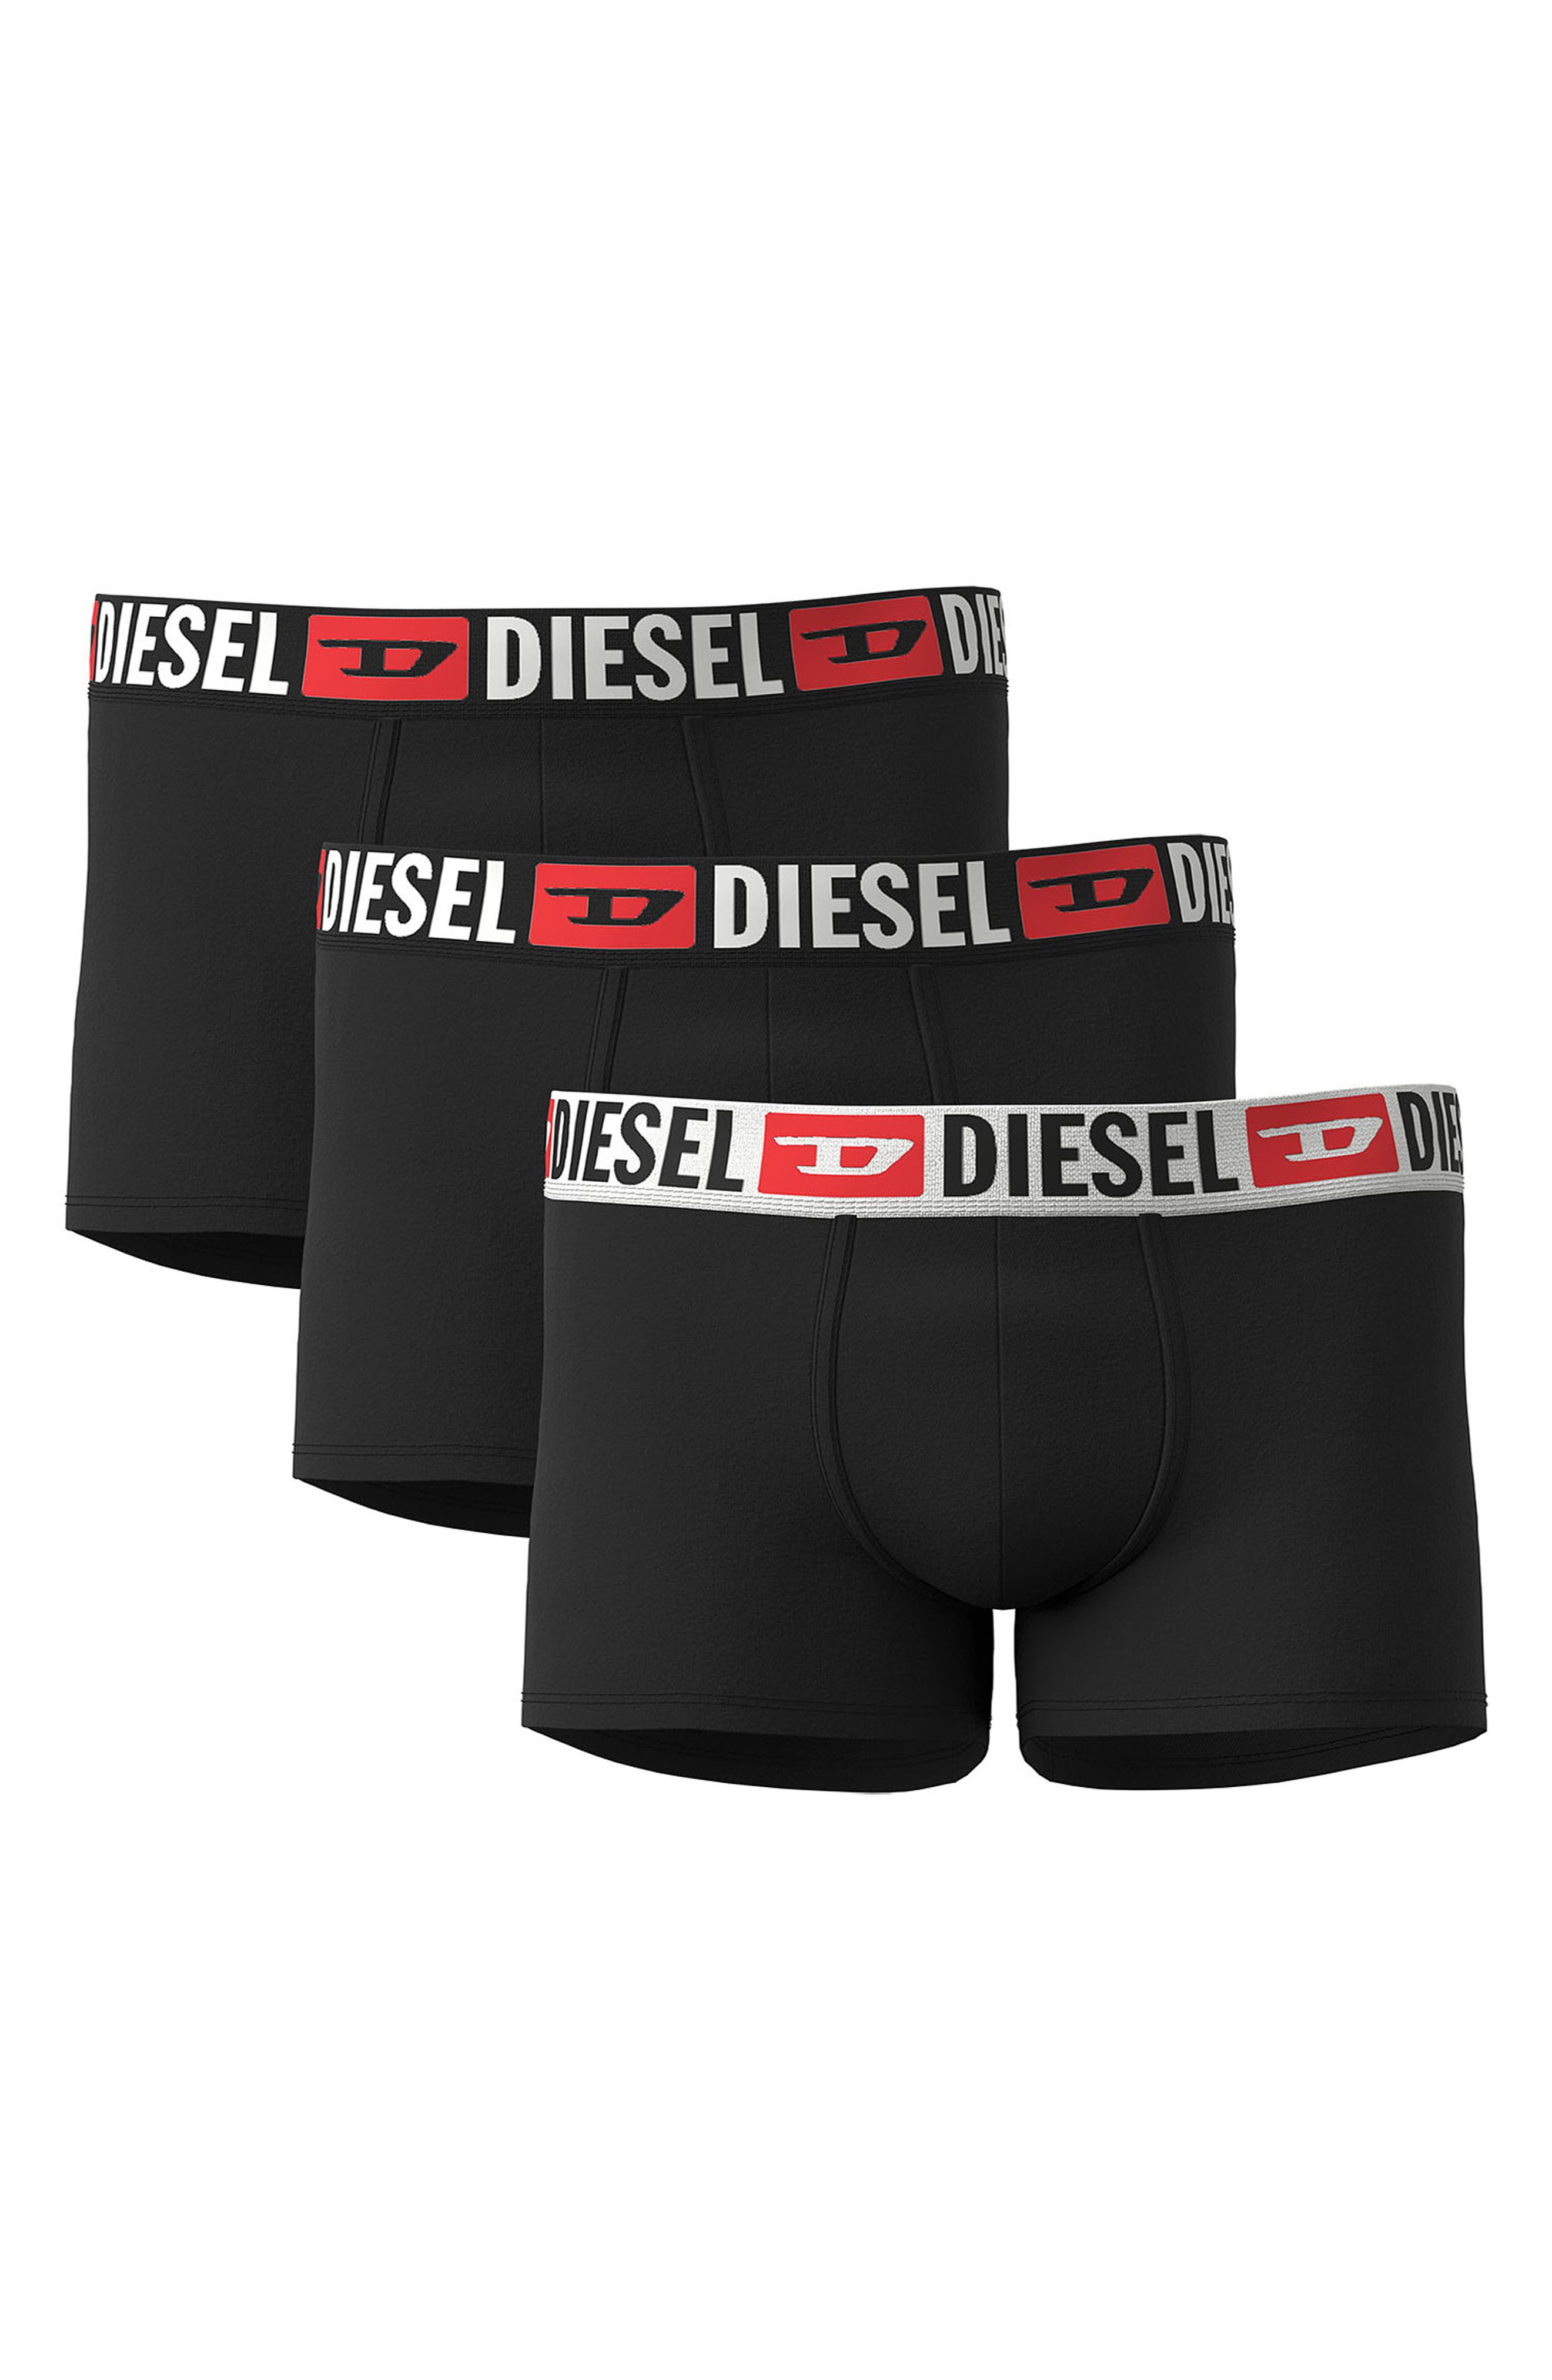 DIESEL(R) UMBX-Damien Assorted 3-Pack Boxer Briefs in Black/Grey